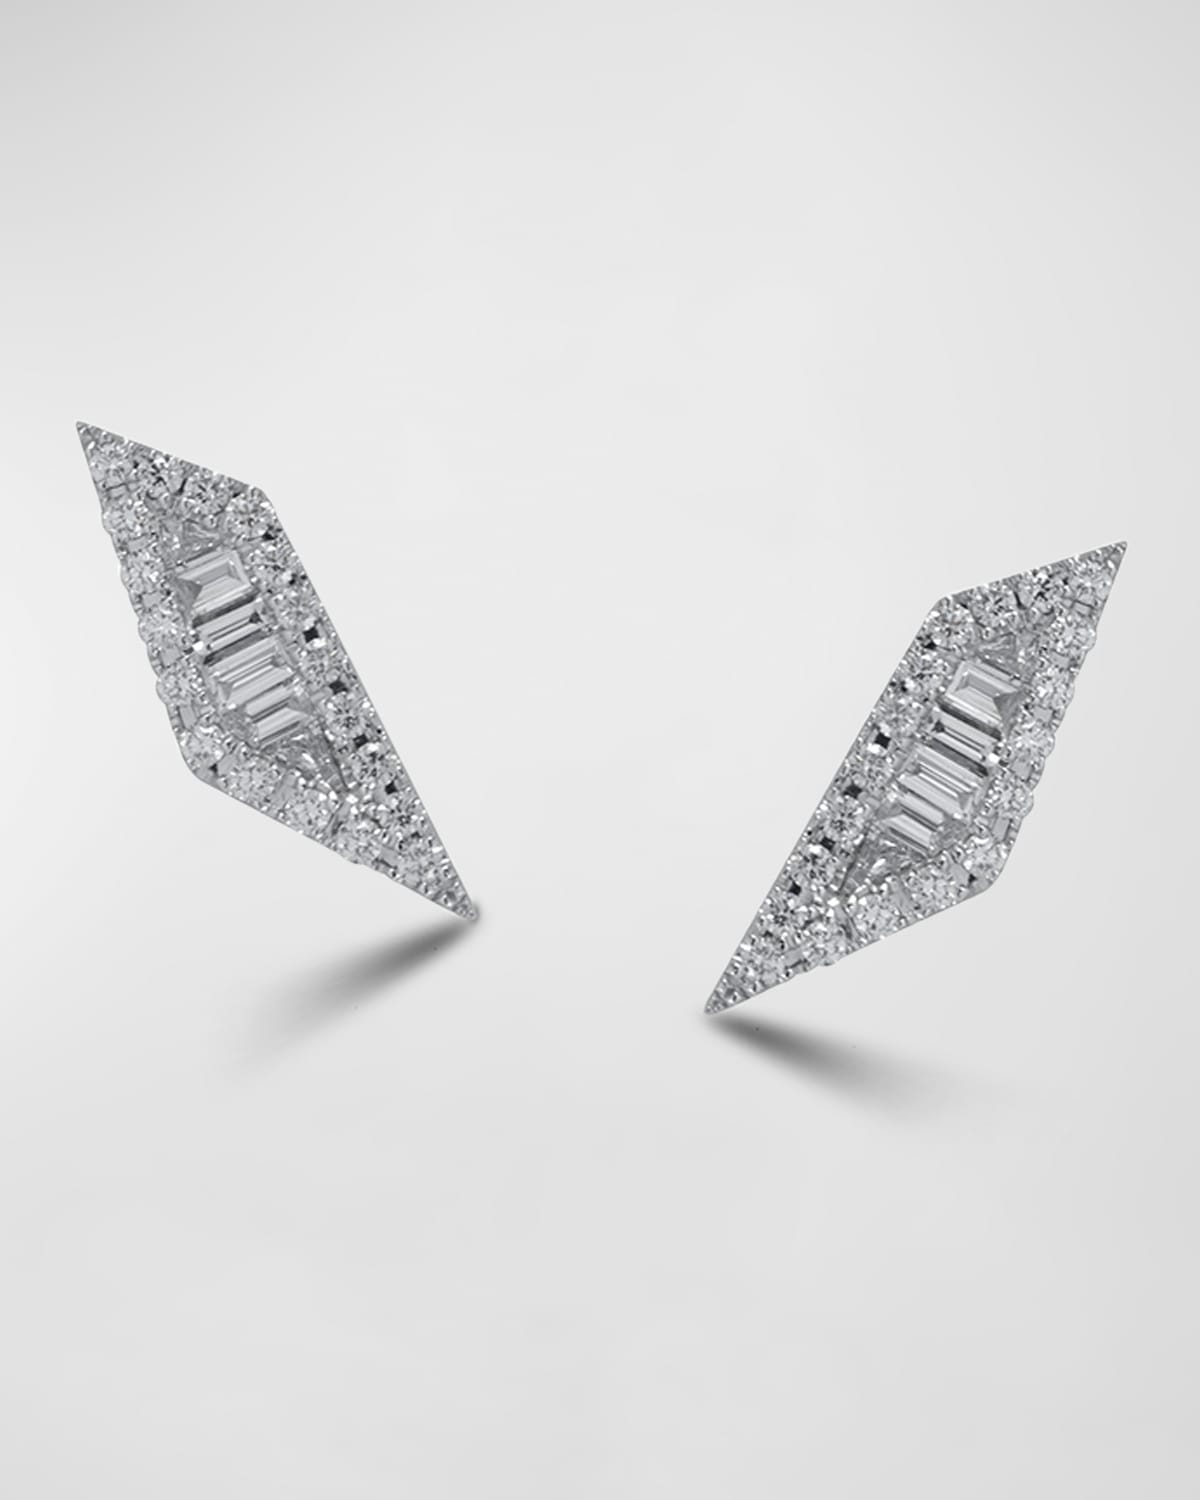 Kavant & Sharart 18K White Gold Diamond-Shaped Earrings